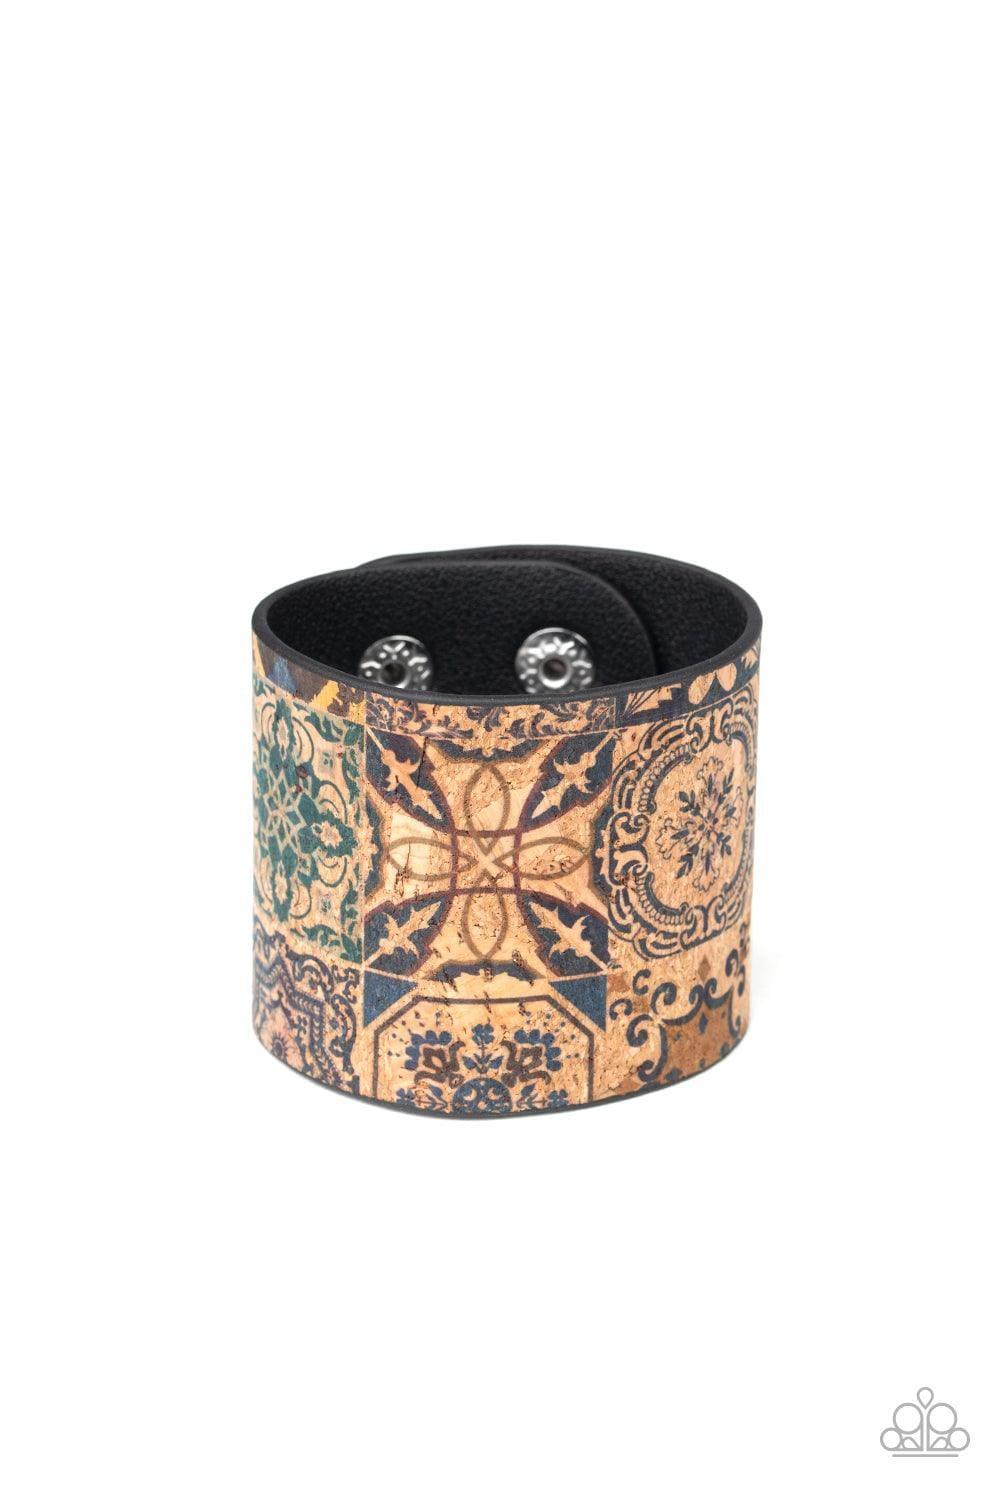 Paparazzi Accessories - Cork Culture - Multicolor Snap Bracelet - Bling by JessieK